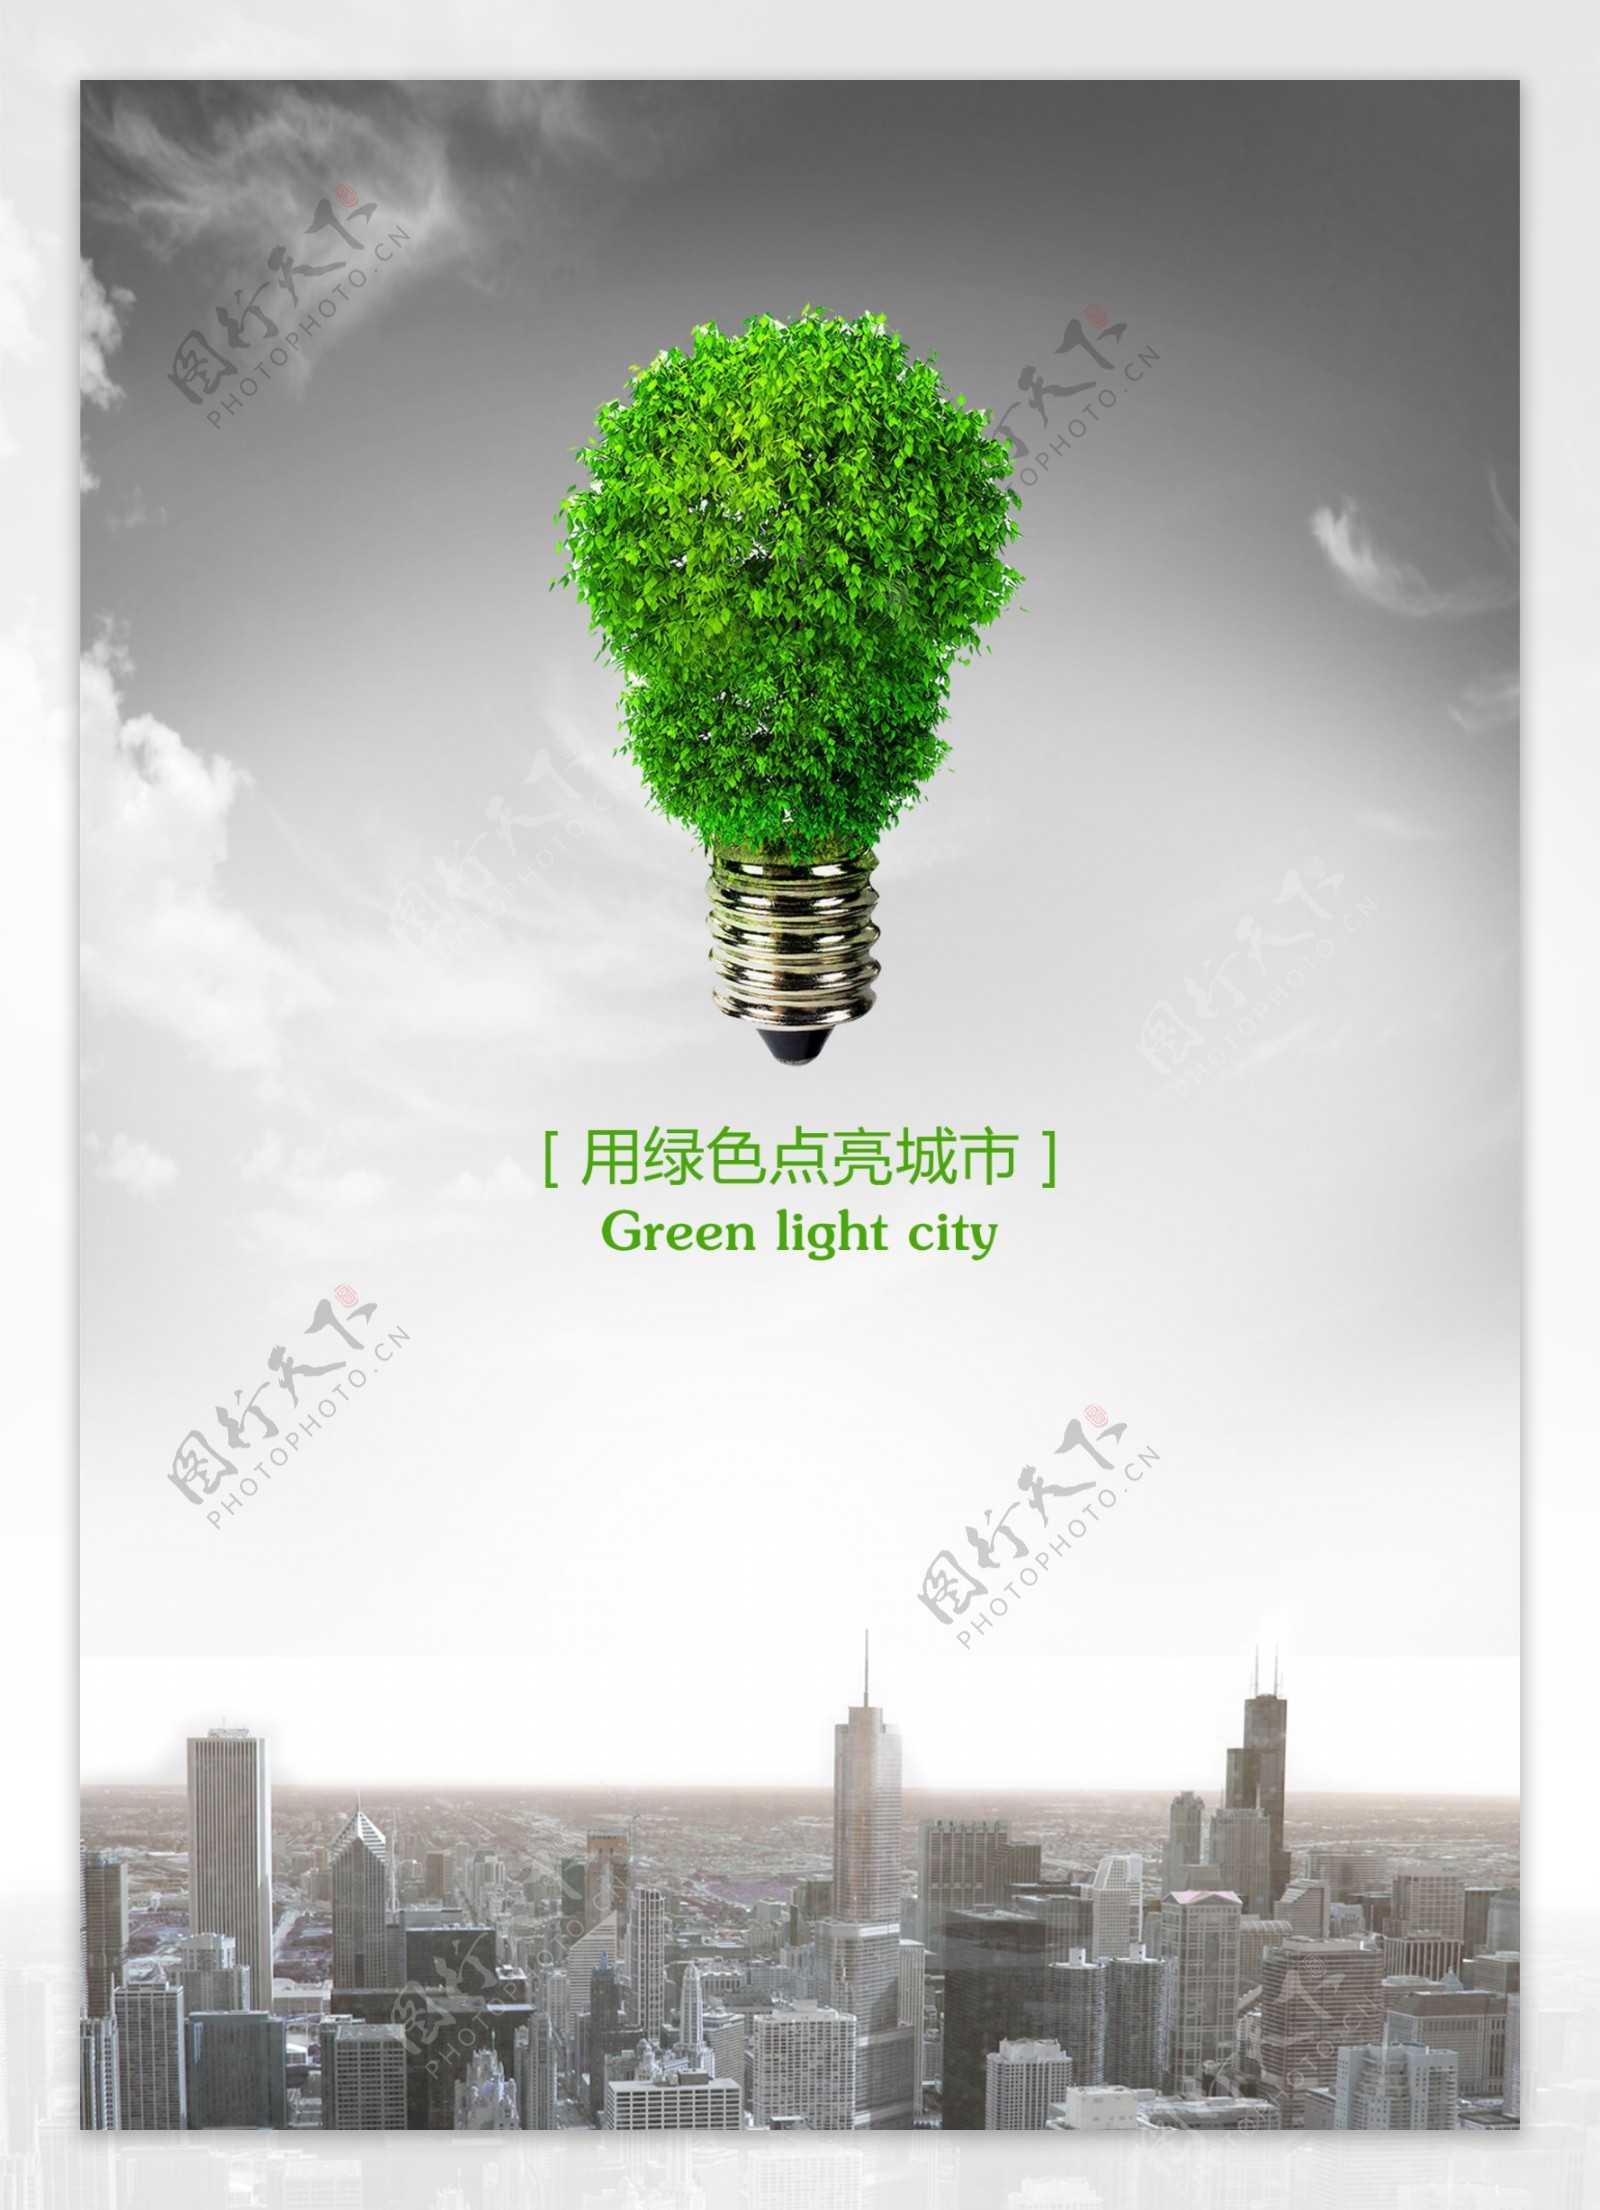 用绿色点亮城市